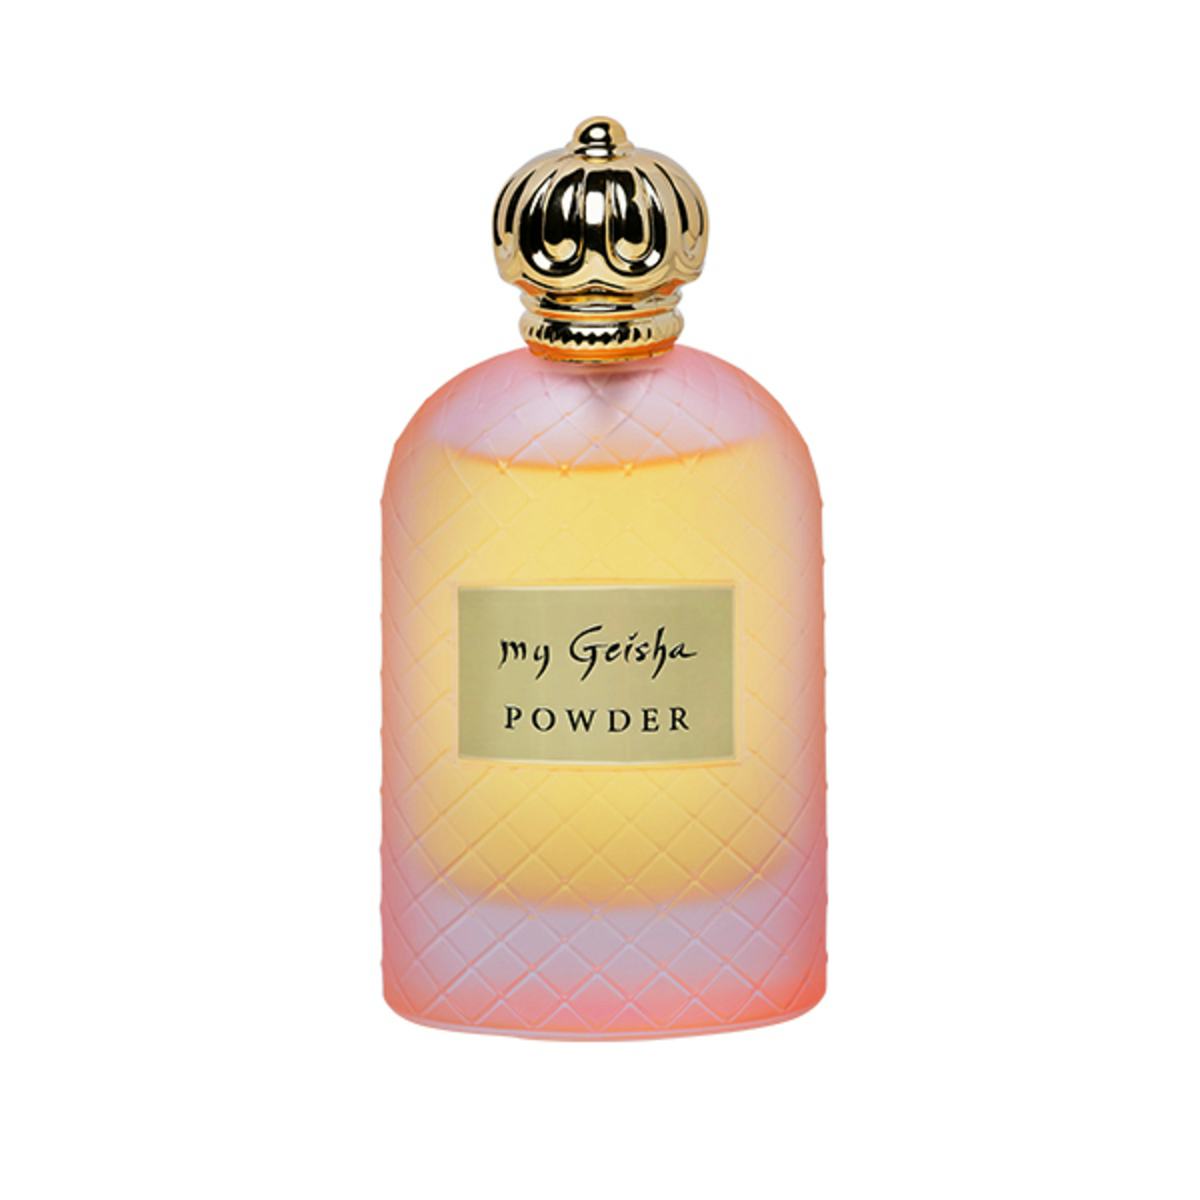 Extrait de parfum "Powder" 100 ml, prodotto artigianale per la vendita diretta in Svizzera